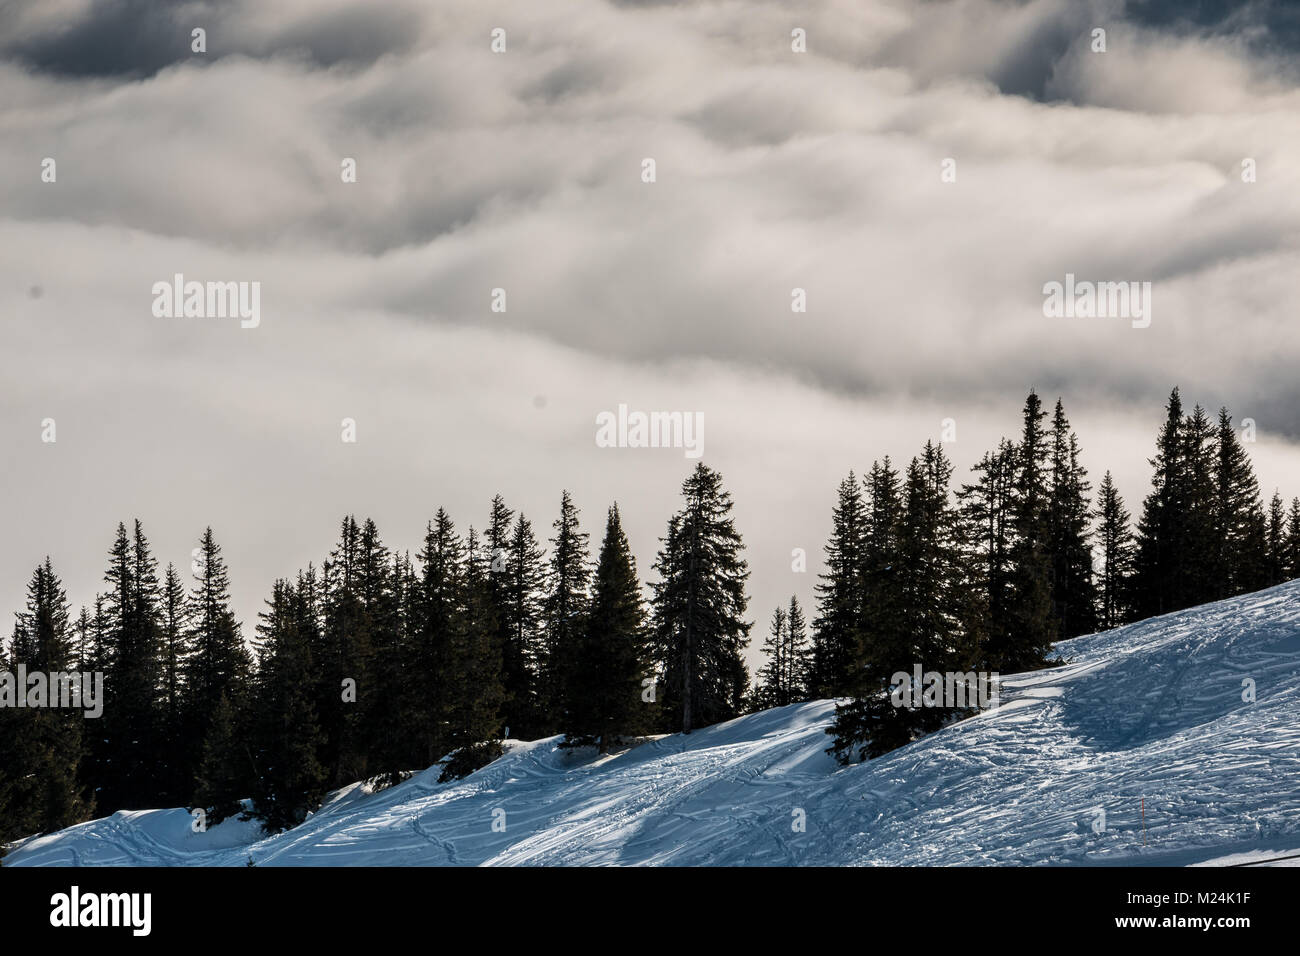 Schnee auf den Höhen der Berge und Nebel das Tal hinunter Stockfoto